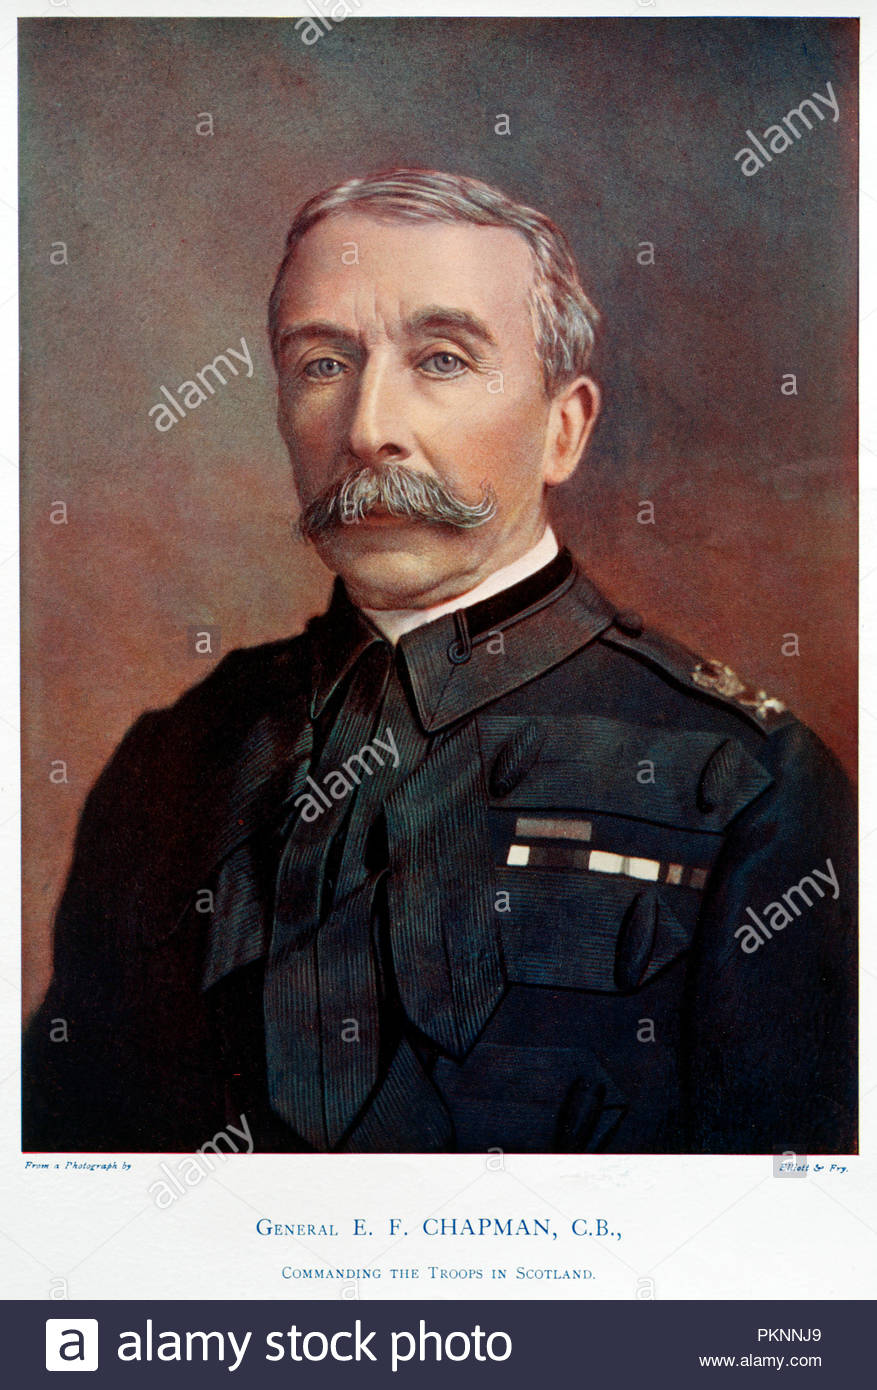 Le général Sir Edward Francis Chapman, 1840 KCB FRGS - 1926, était un haut officier de l'armée britannique qui commandait l'armée en Ecosse et a été le chef de cérémonie du Régiment royal de l'artillerie. Illustration couleur à partir de 1900 Banque D'Images